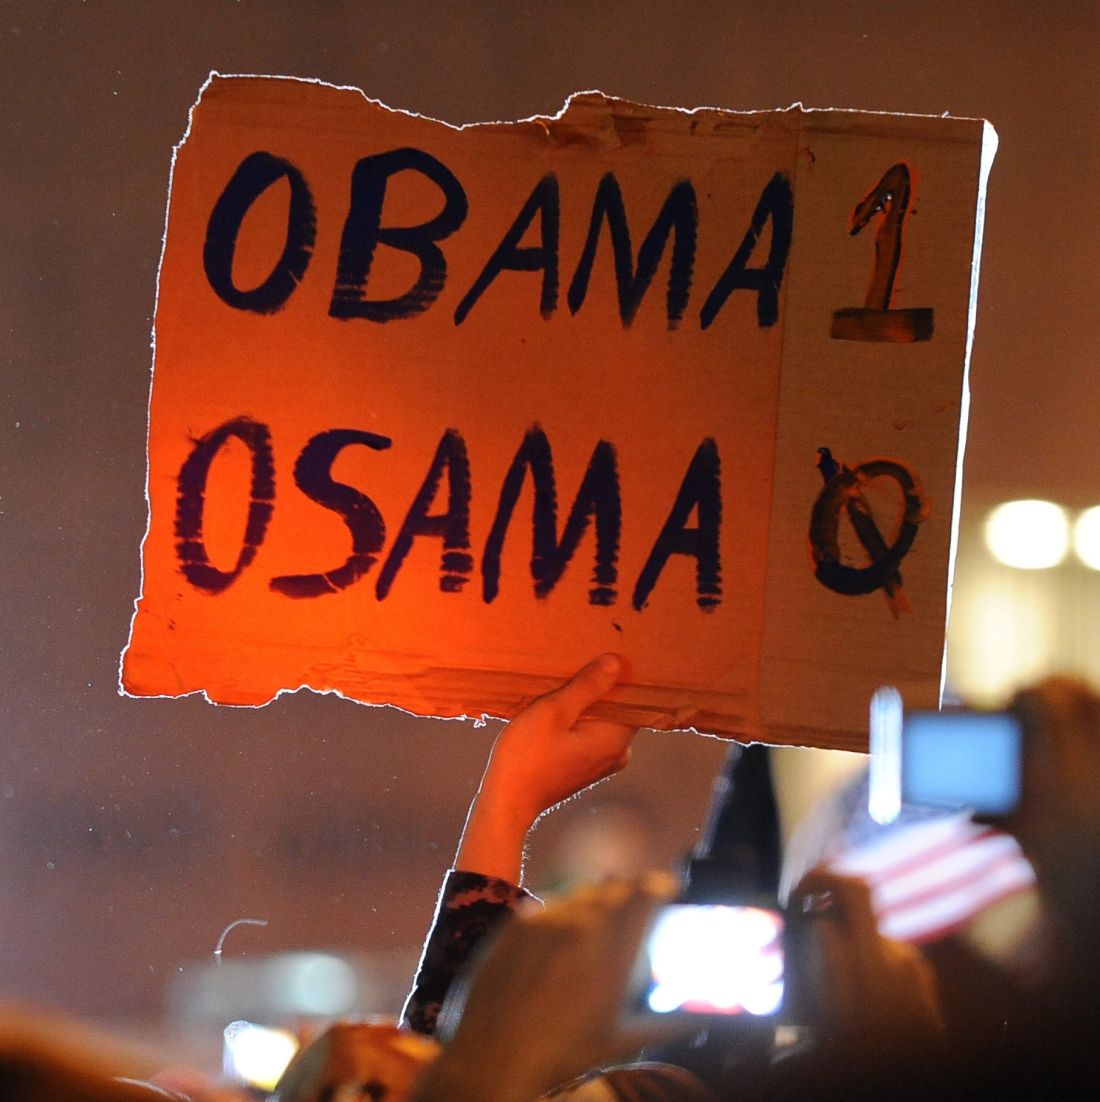 Осама е мъртъв, потвърди Обама. Светът ликува